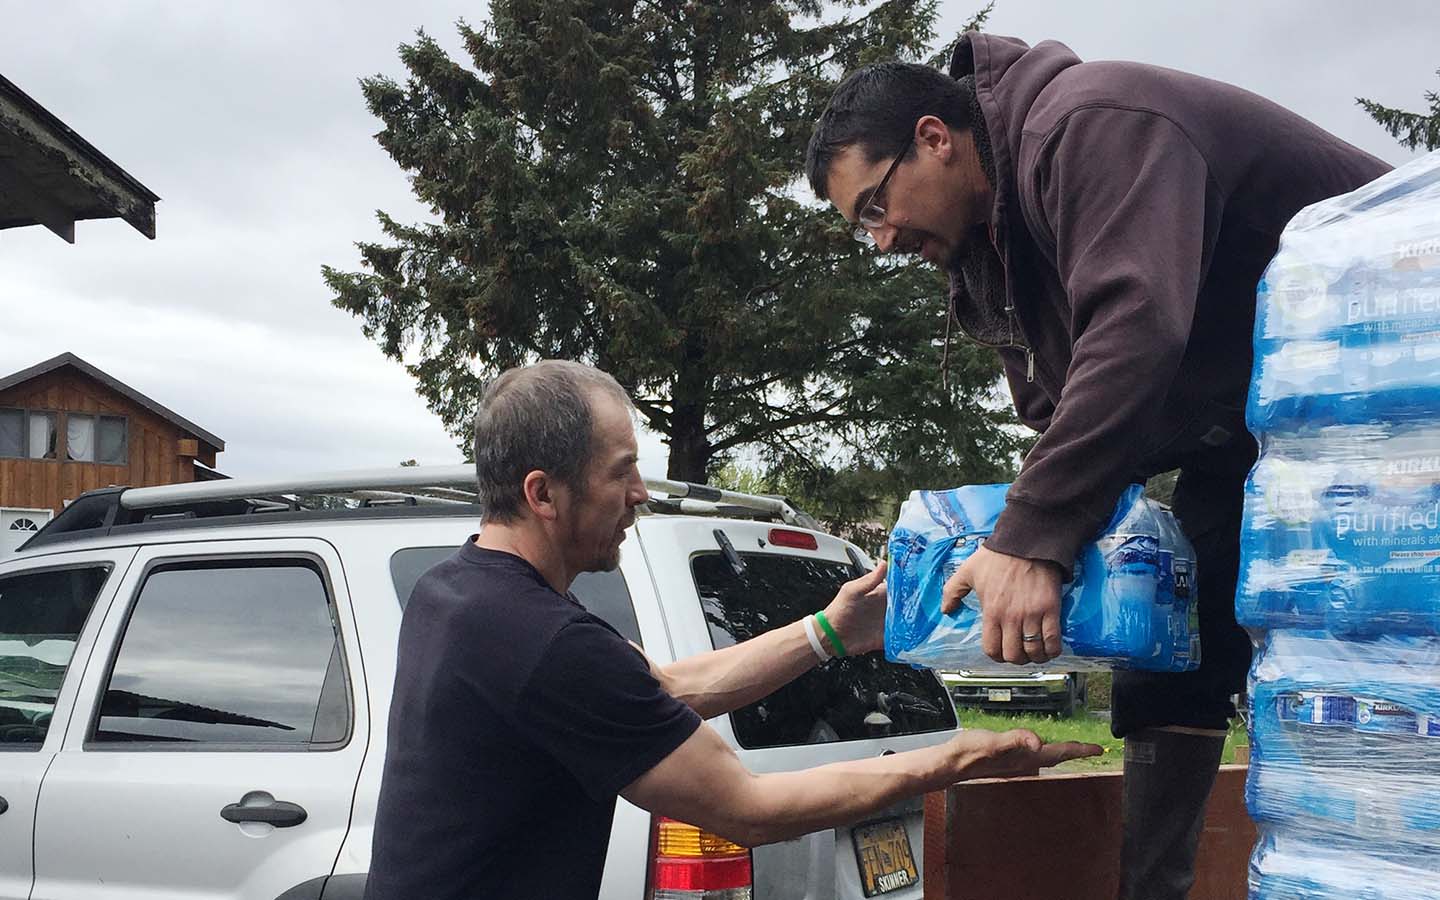 Donating pallets of bottled water in Kake, Alaska